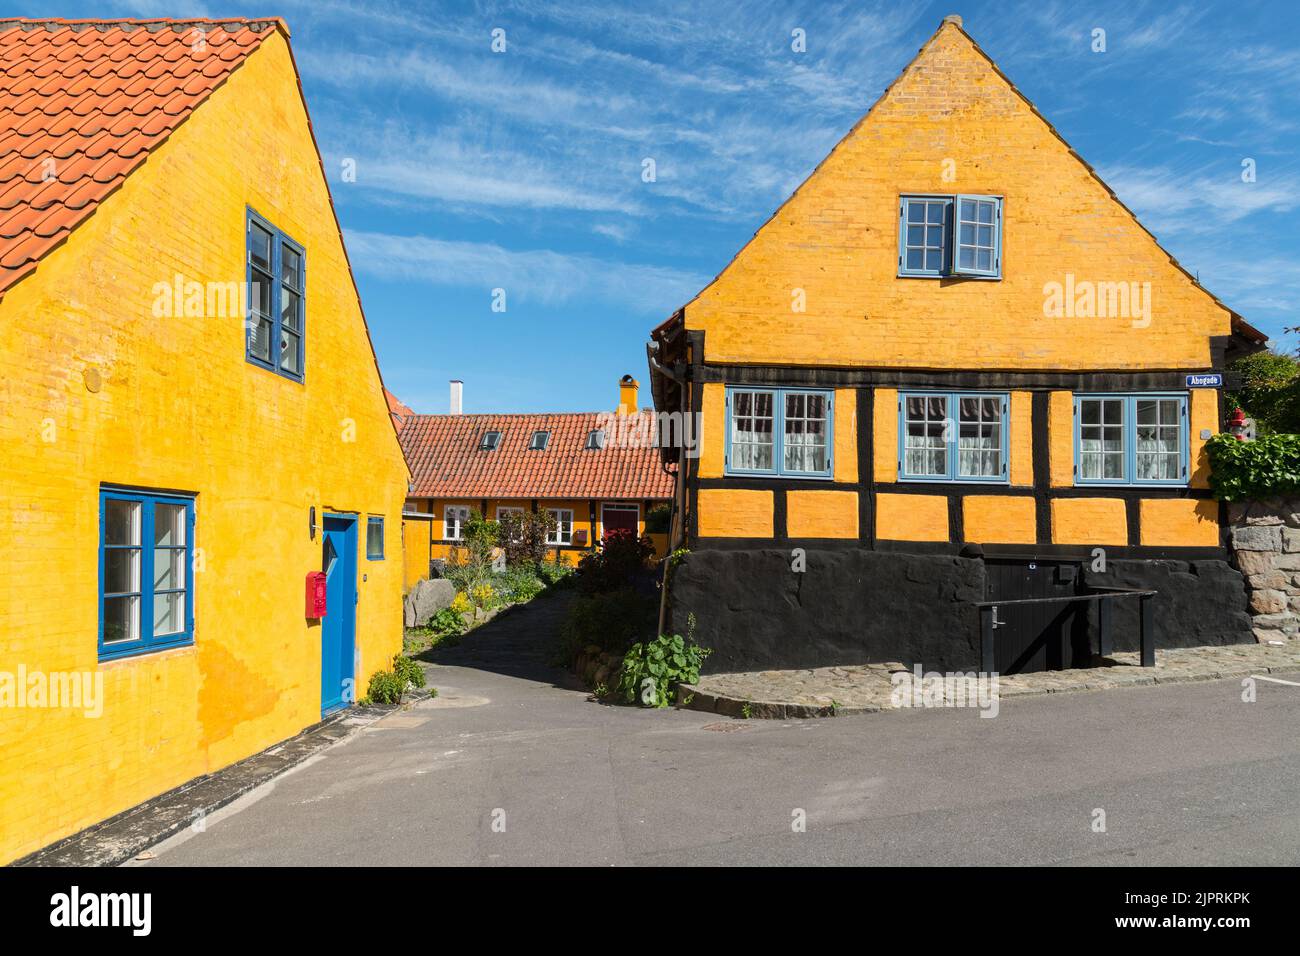 Gudjhem, old town and harbour, Bornholm, Denmark Stock Photo